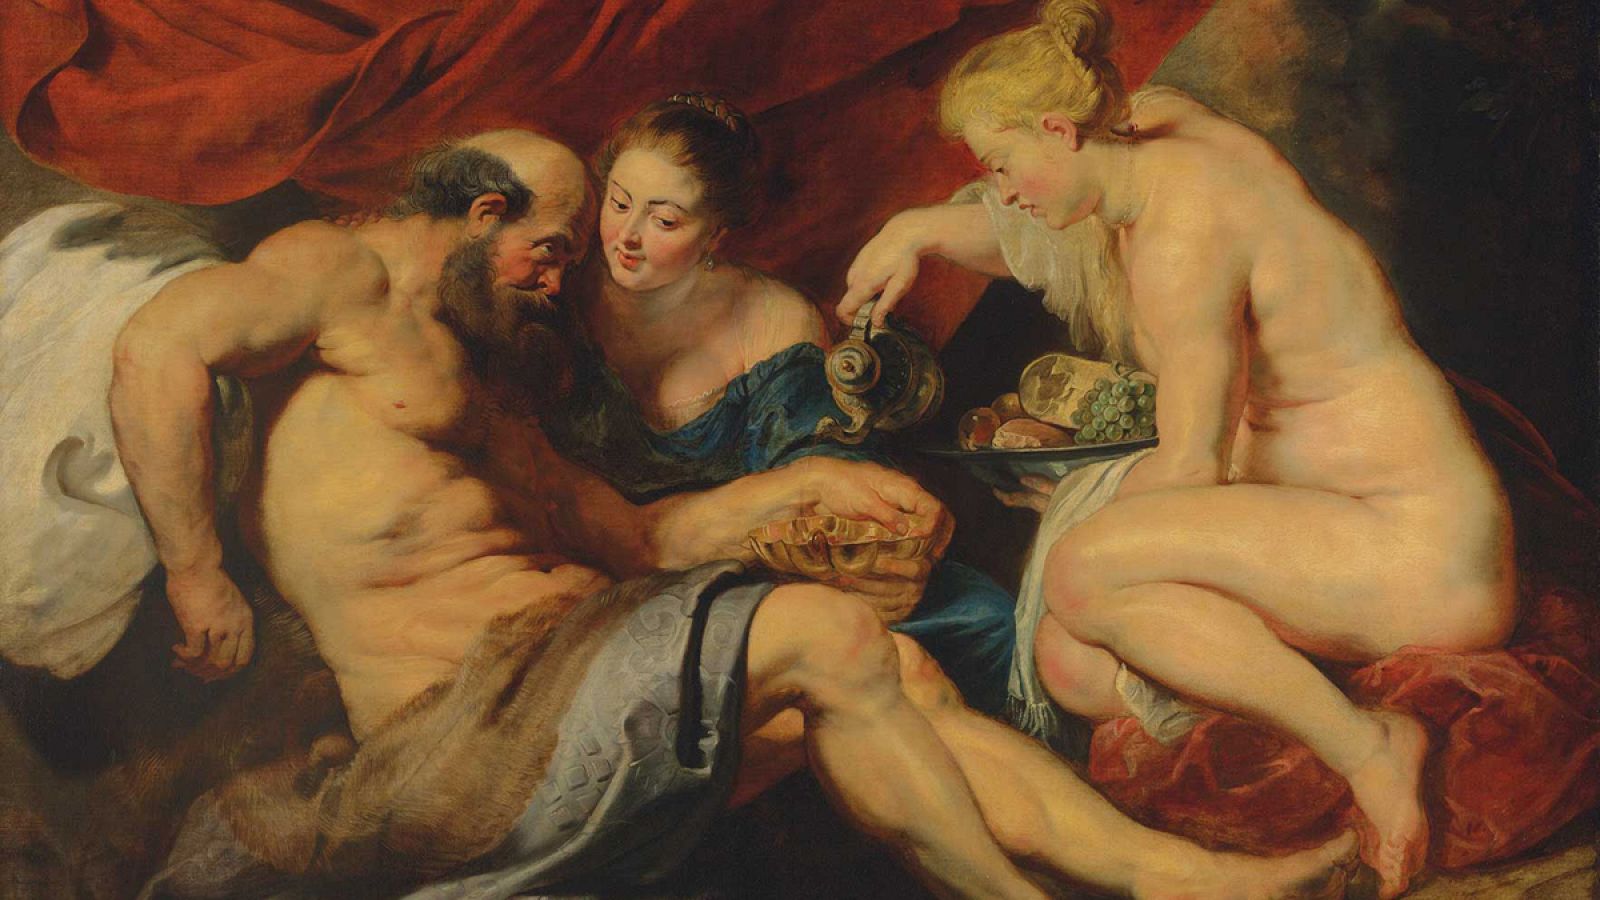 El óleo 'Lot y sus hijas', del pintor Peter Paul Rubens.